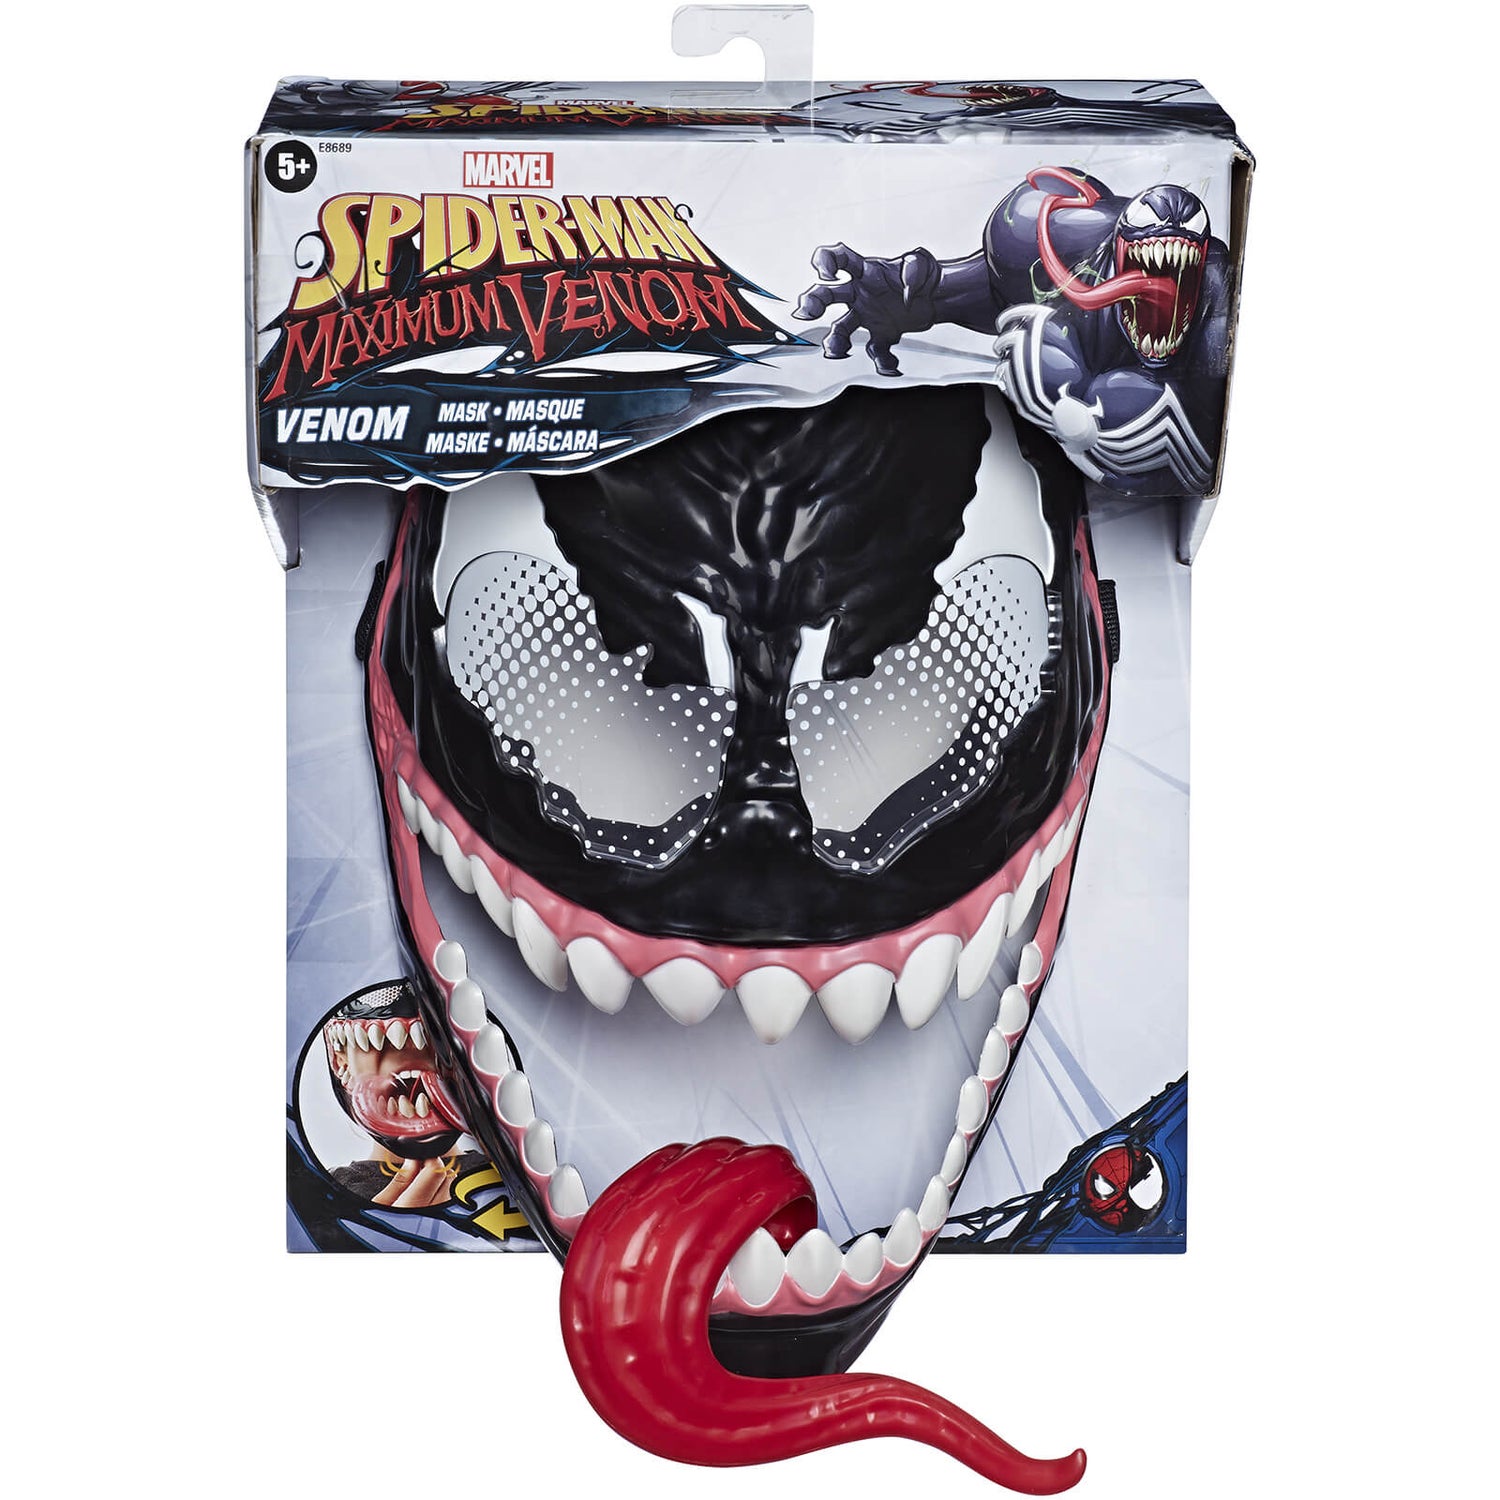 Hasbro Marvel Spider-Man Maximum Venom Masque - Venom